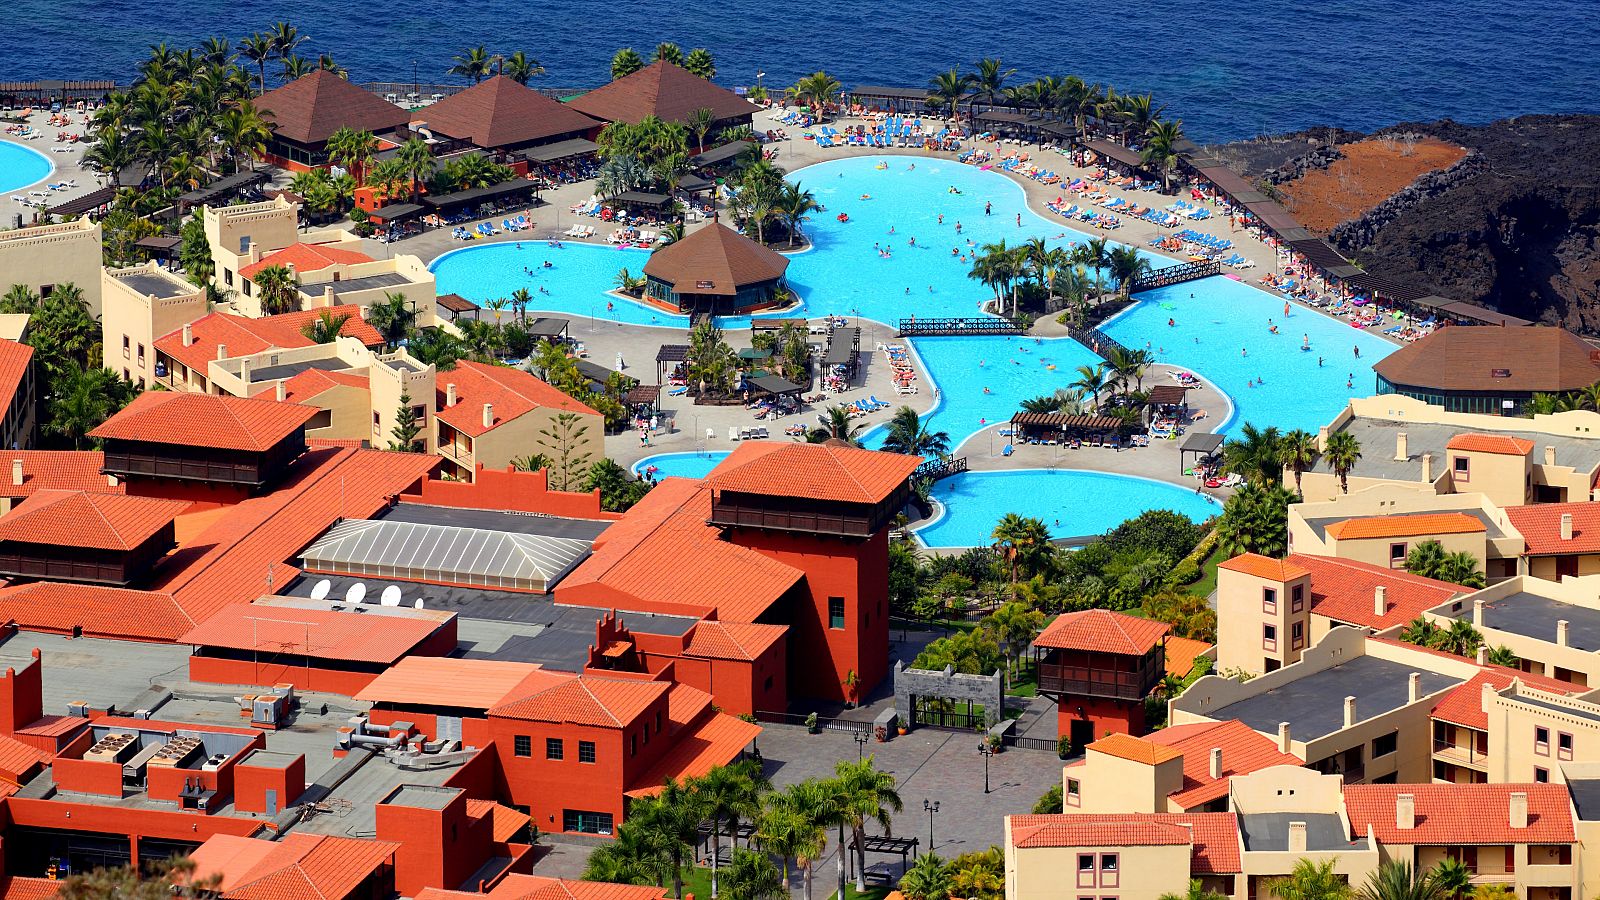 Resort turístico La Palma & Teneguía Princess, situado en Fuencaliente.